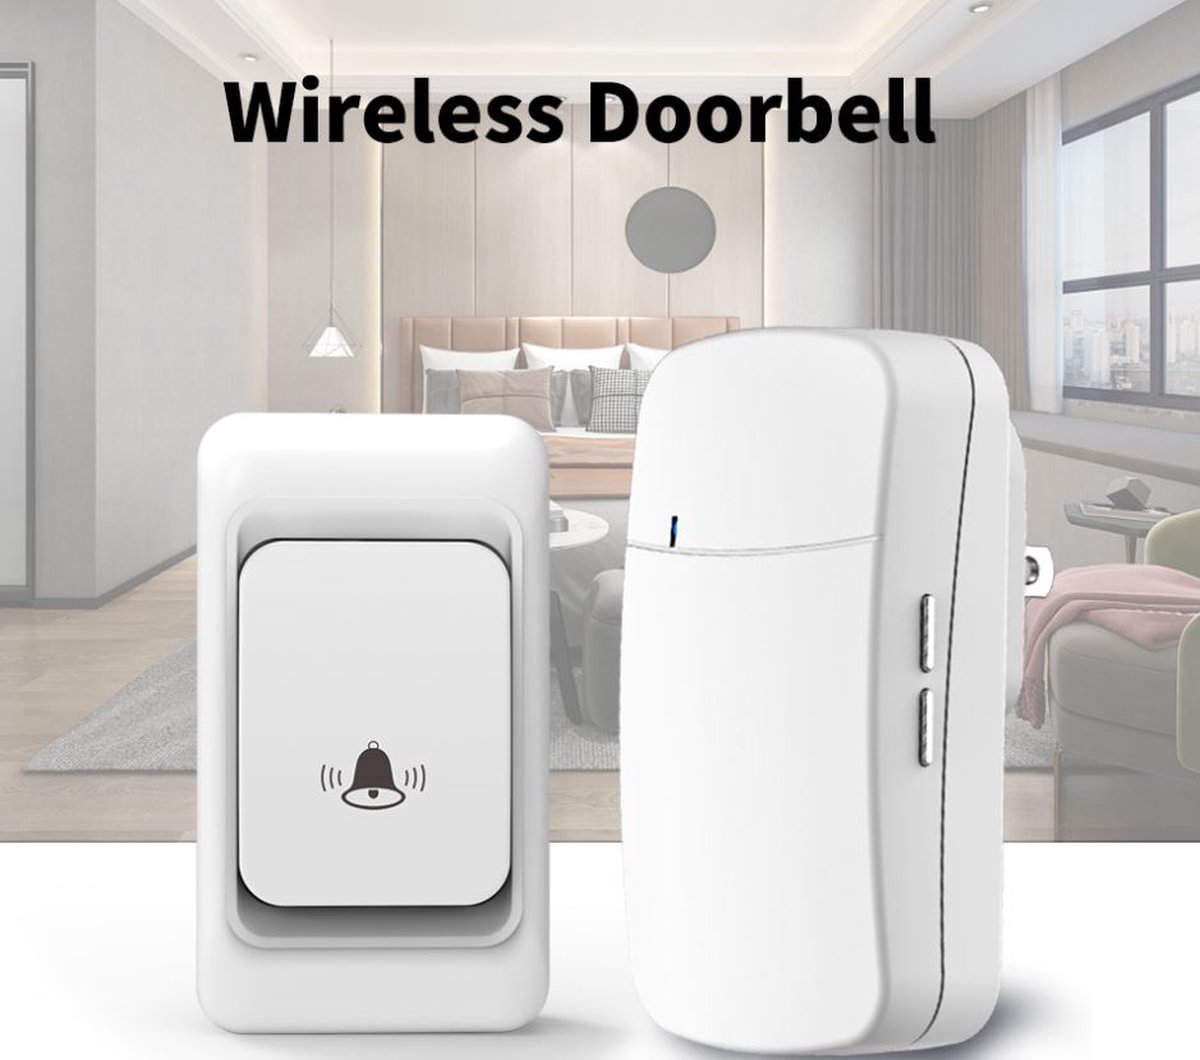 Draadloze Deurbel - Deurbelset - Plug-in Ontvanger -Wireless doorbell - Wit